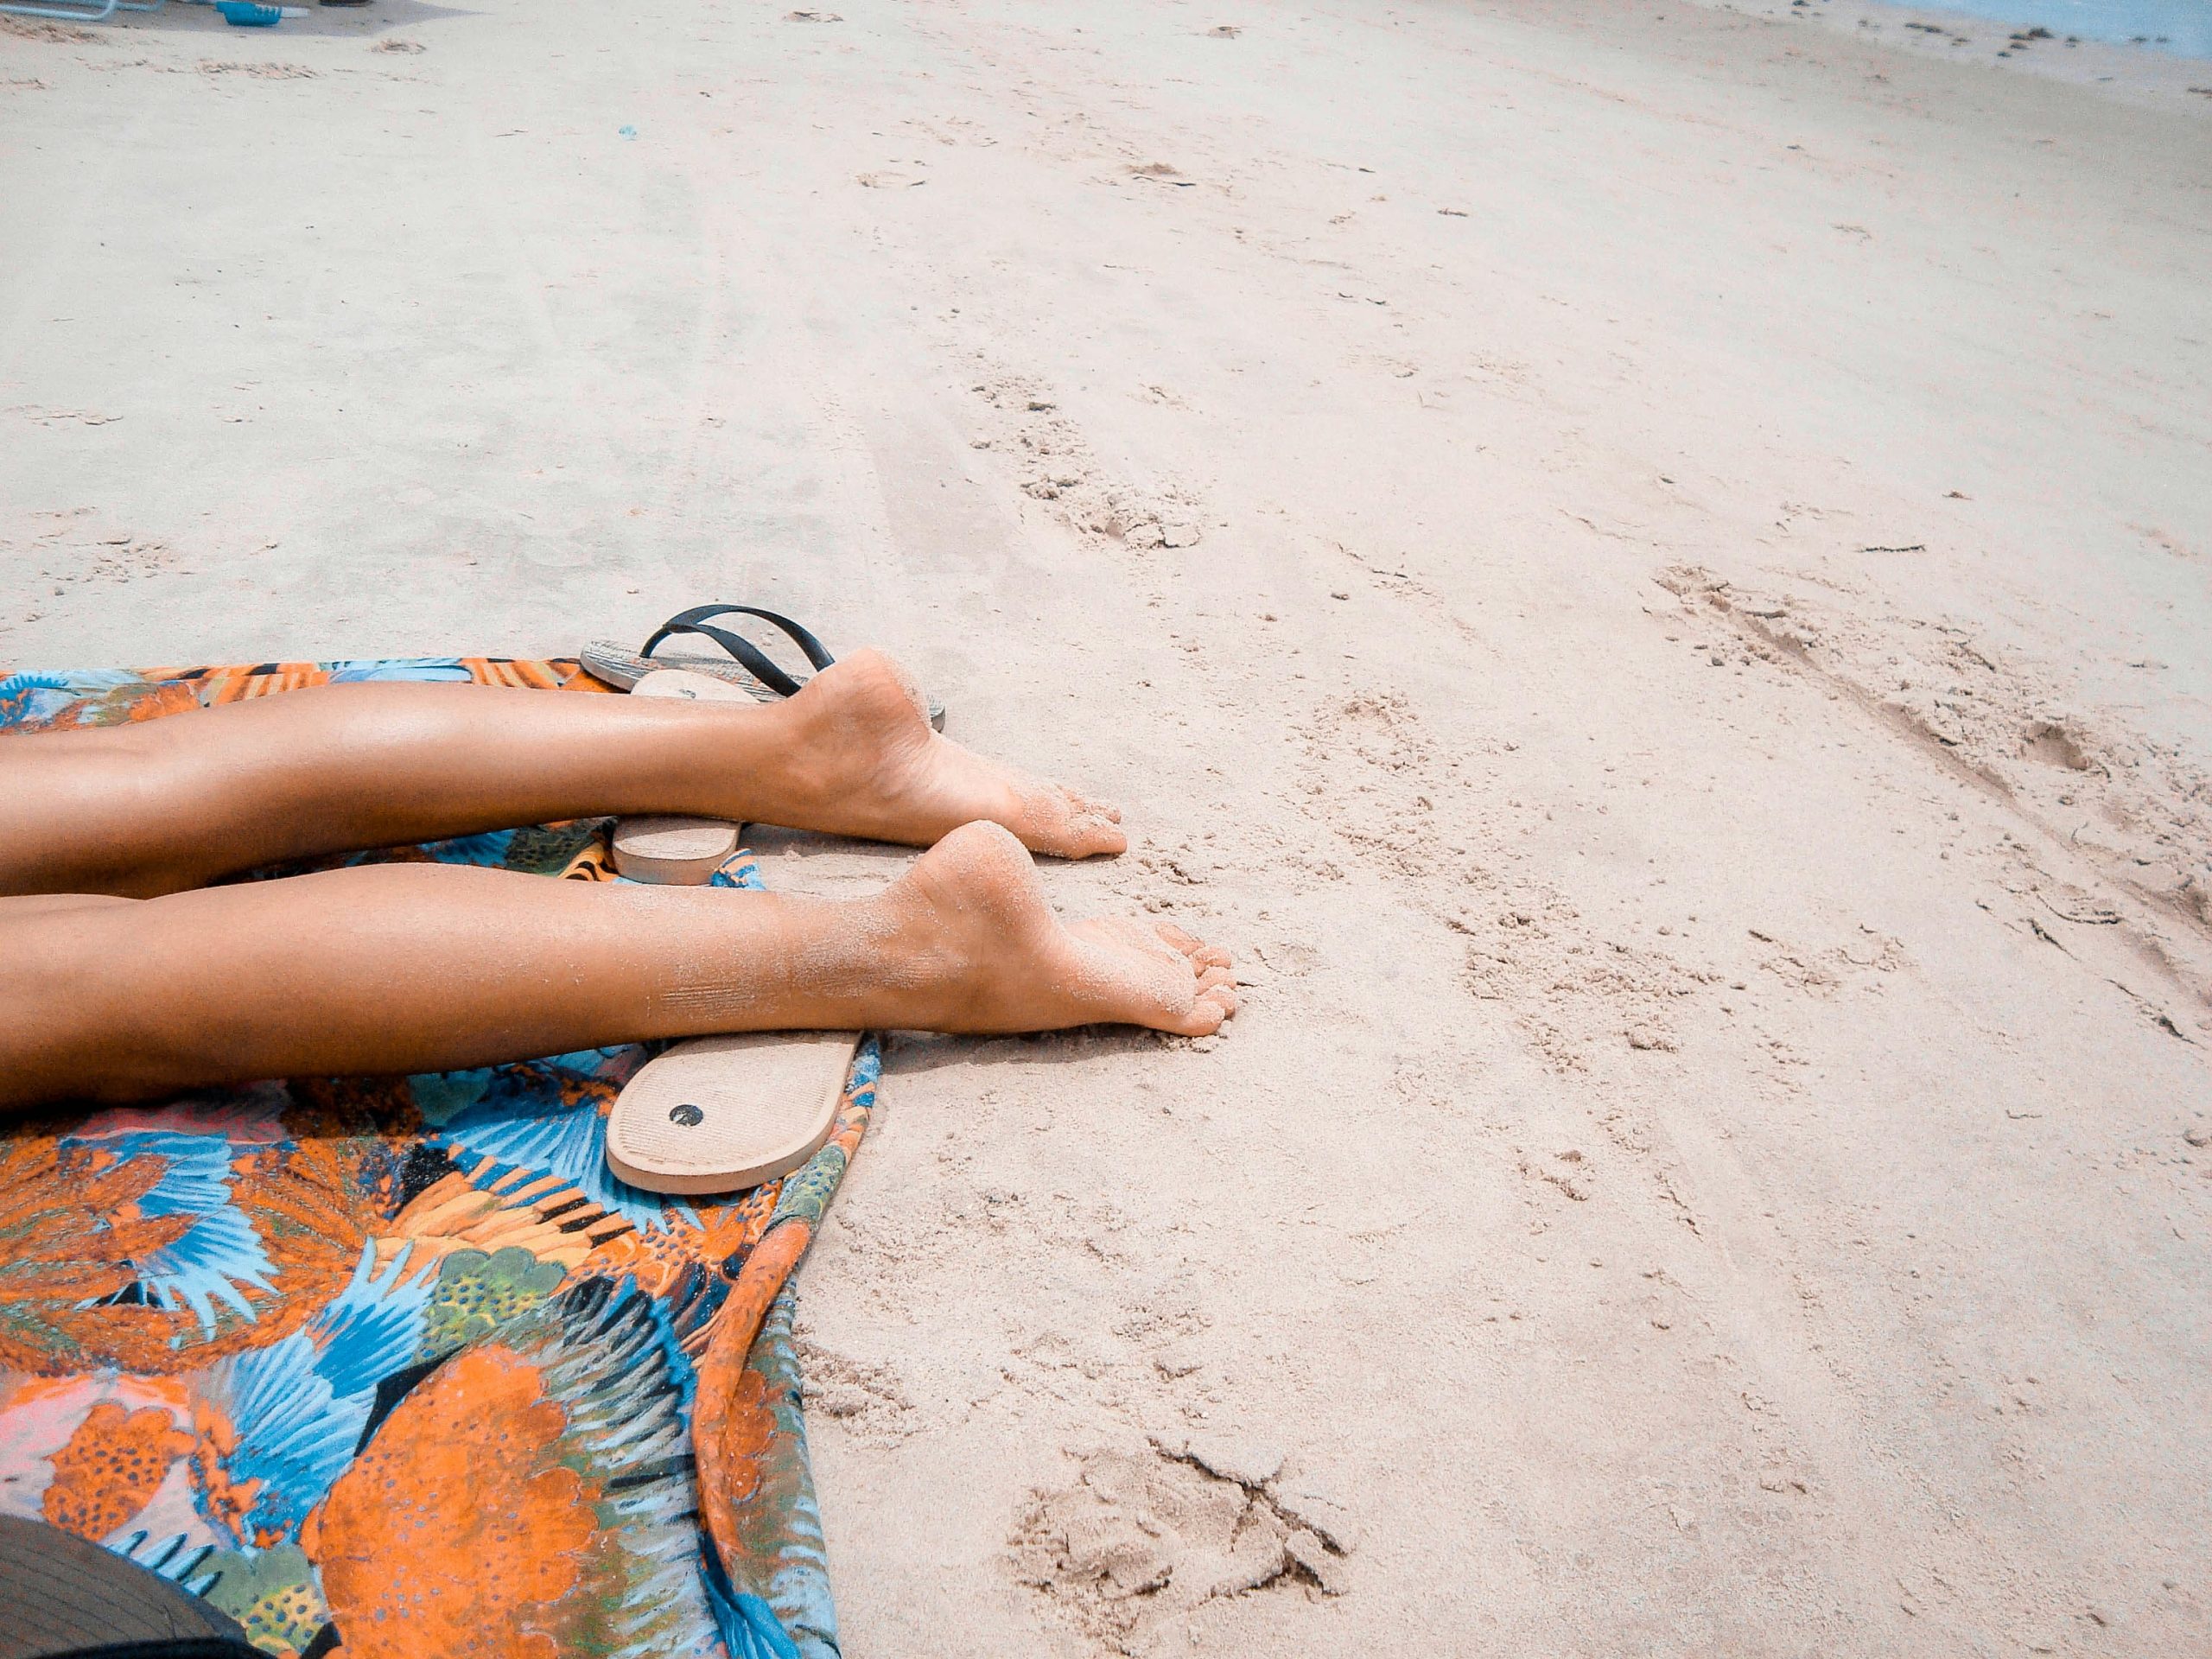 découvrez notre collection de serviettes de plage, idéales pour vous détendre au bord de l'eau. choisissez parmi une variété de designs et de couleurs pour trouver la serviette parfaite pour votre prochaine escapade à la plage.